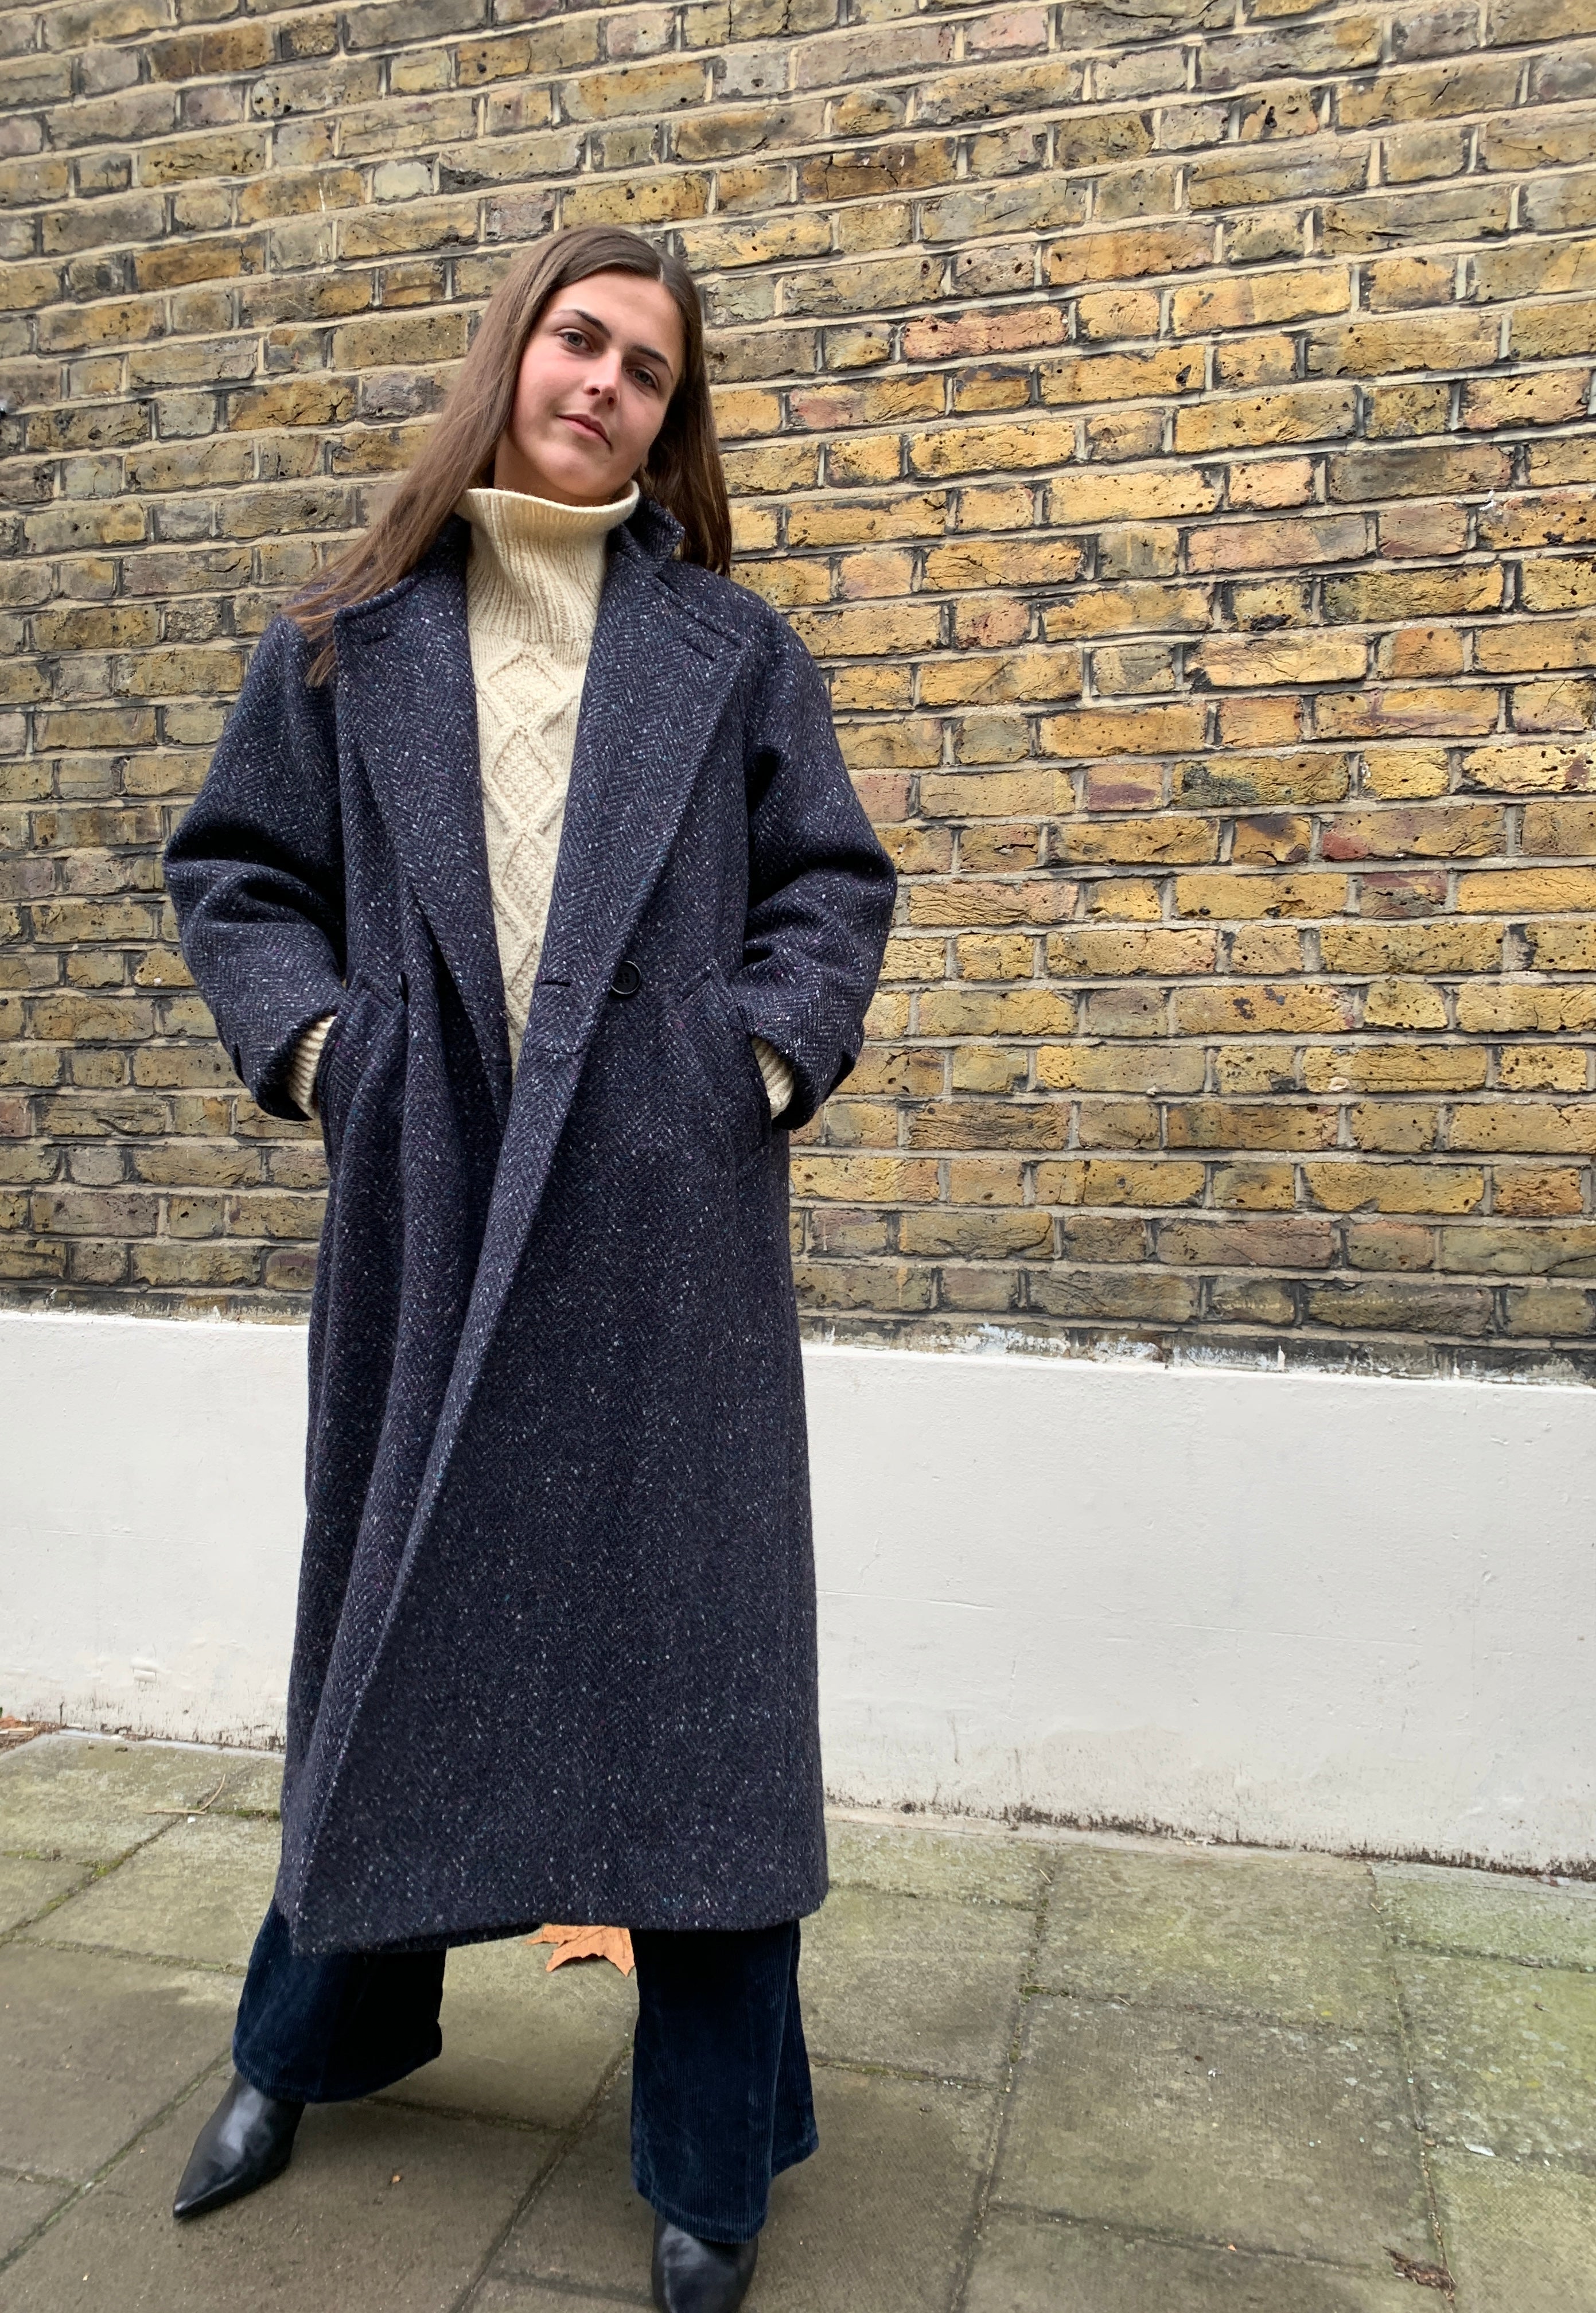 Vintage 1990s Calvin Klein tweed coat